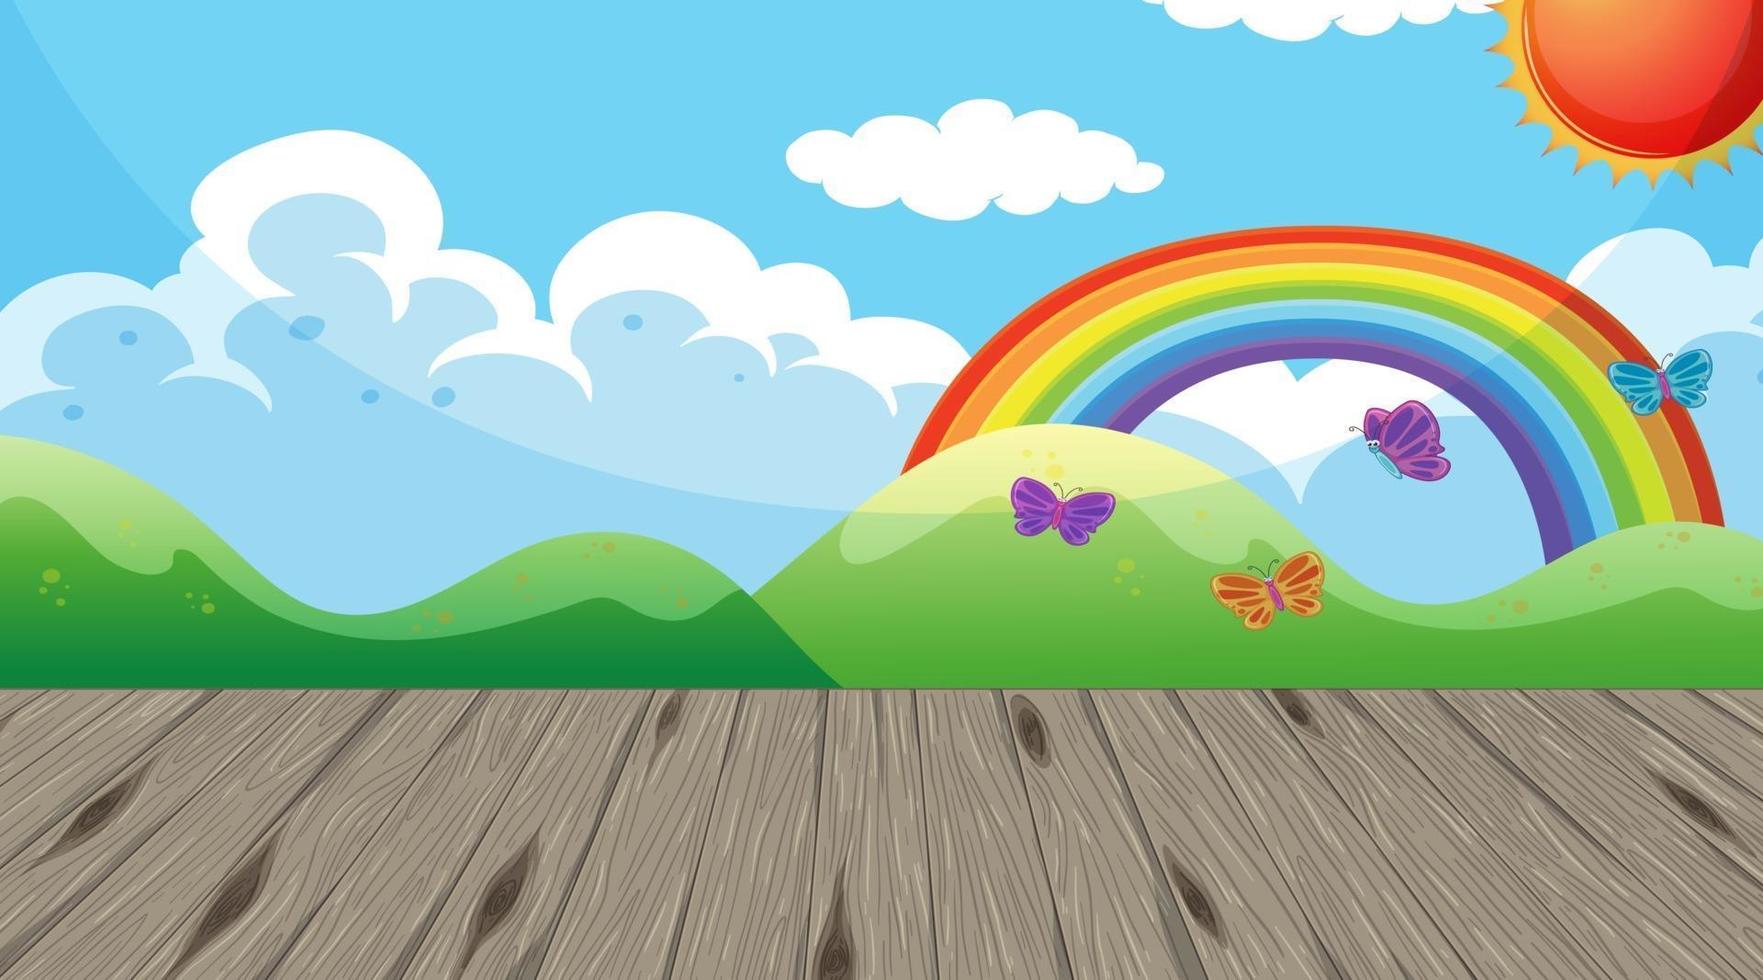 sala de jardín de infantes vacía con arco iris en el fondo de pantalla del cielo vector